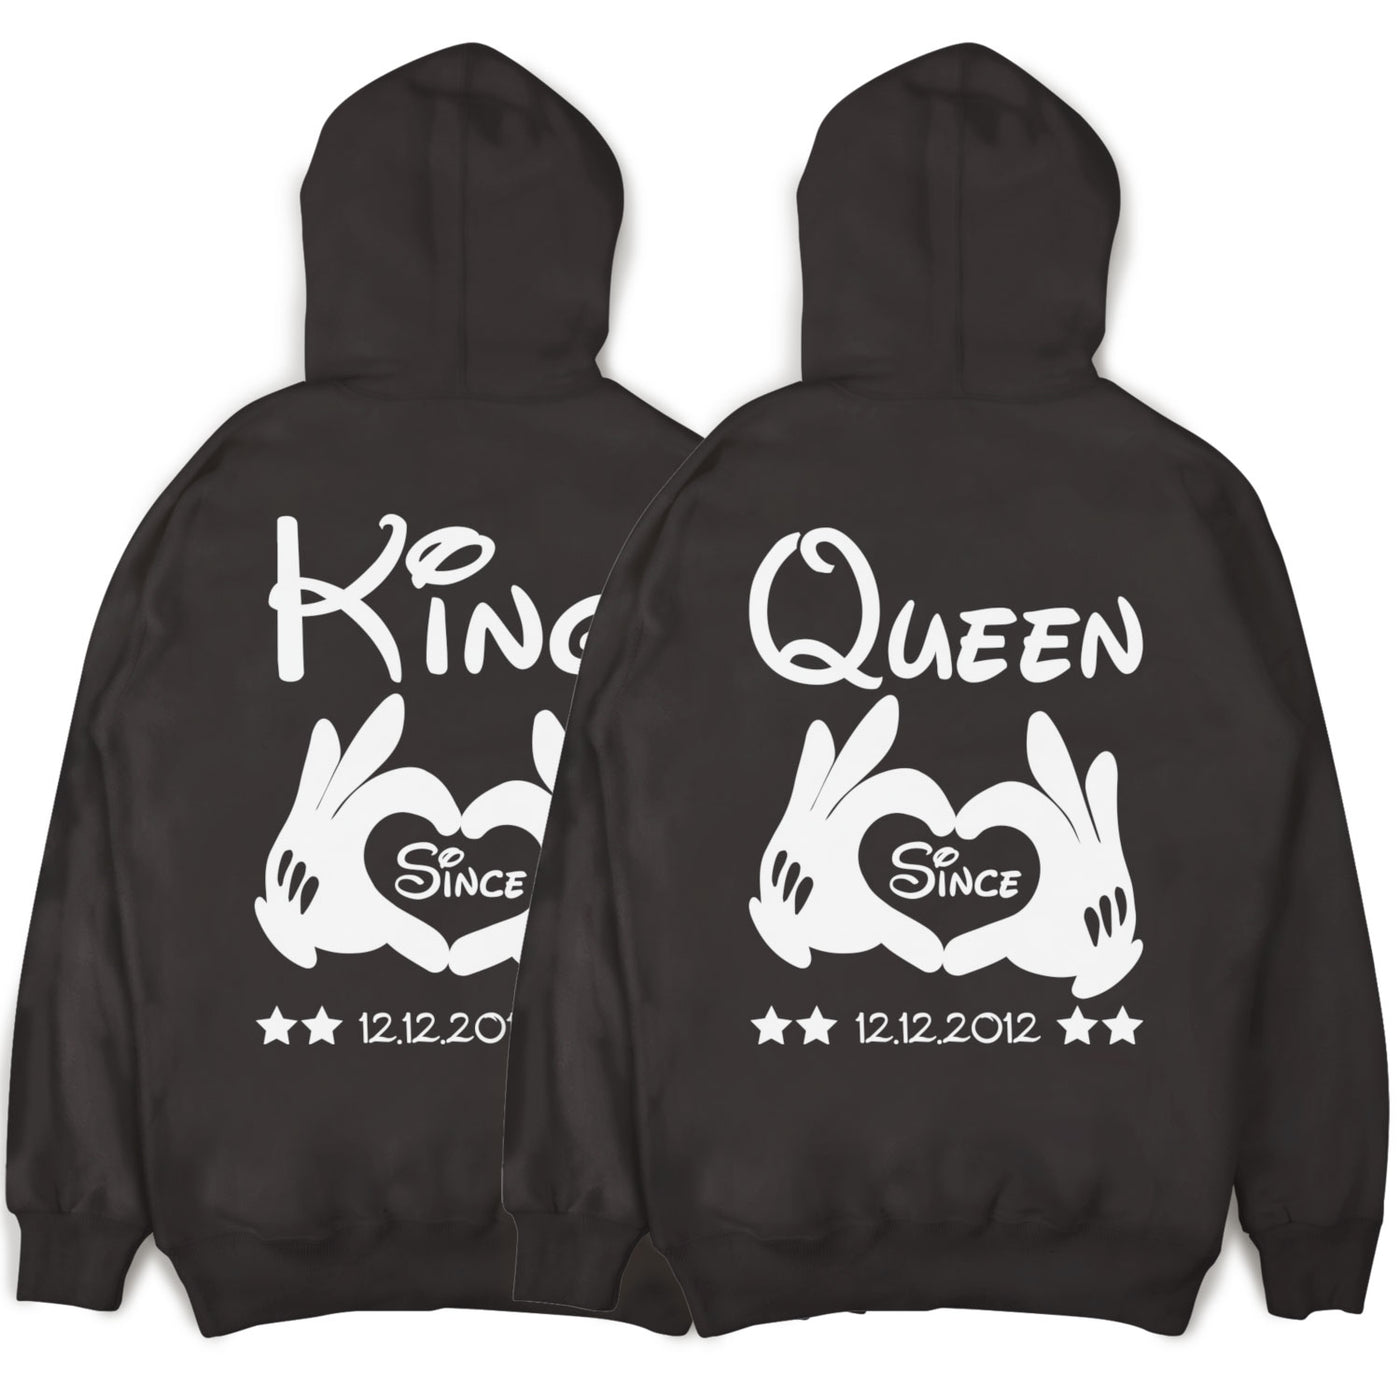 king-queen-hoodies-hands-drkgry-ft104hod